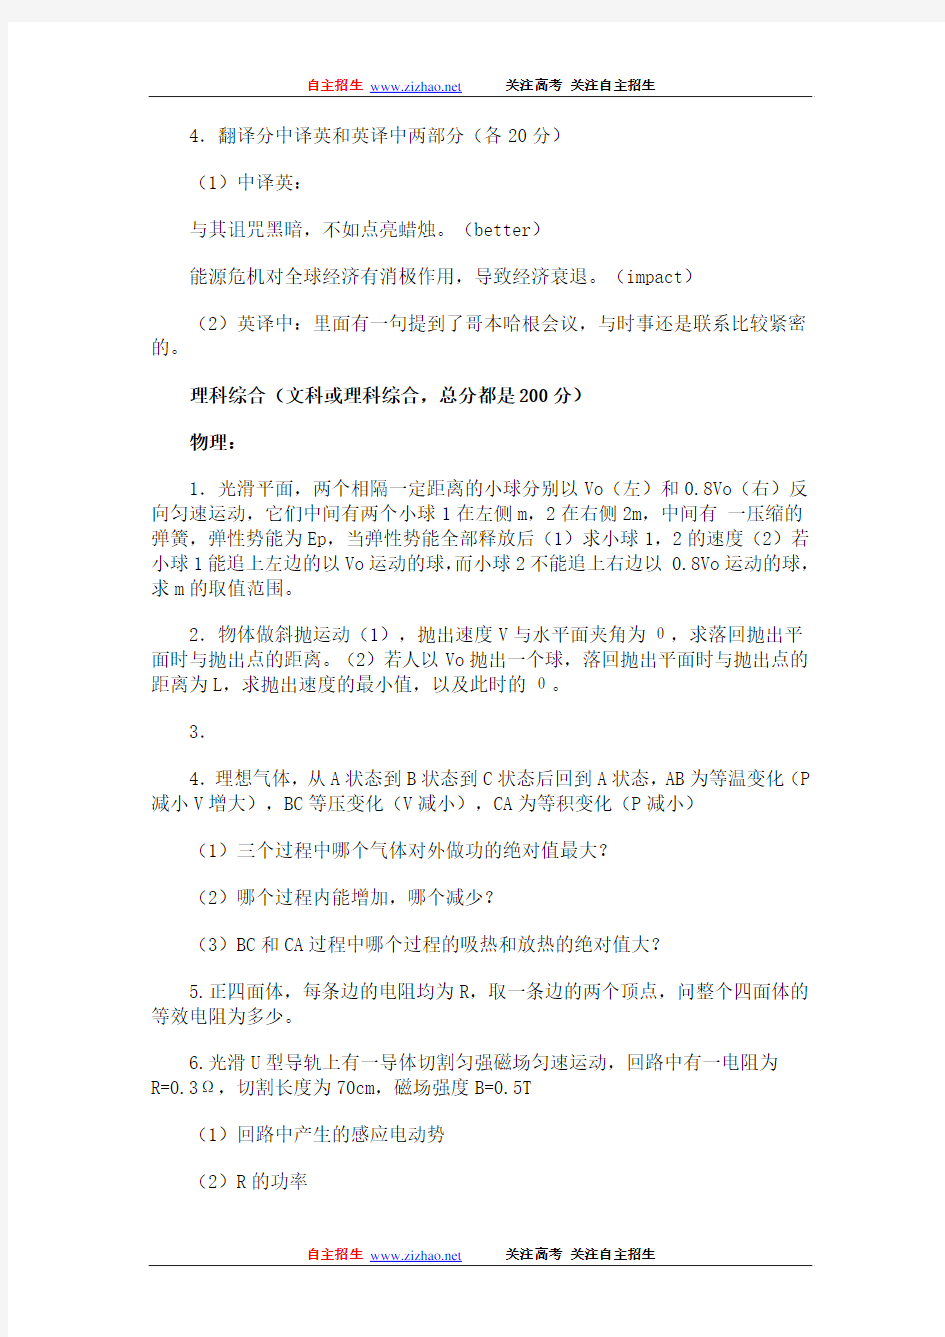 2010年北京大学自主招生试题(与北京航空航天大学和香港大学联考)